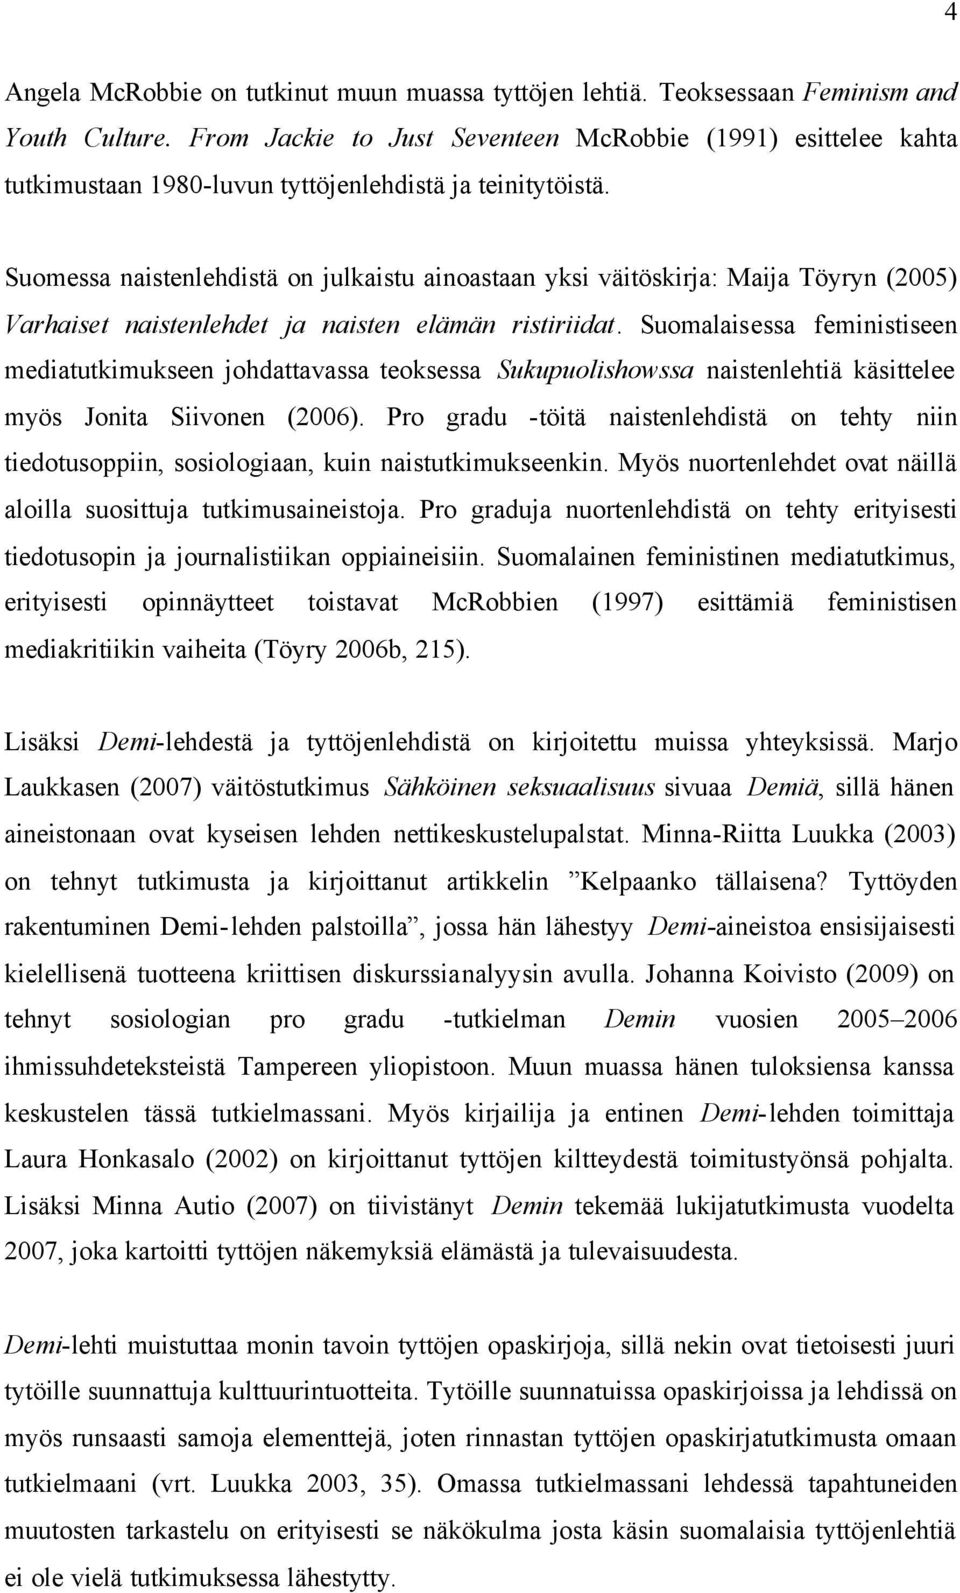 Suomessa naistenlehdistä on julkaistu ainoastaan yksi väitöskirja: Maija Töyryn (2005) Varhaiset naistenlehdet ja naisten elämän ristiriidat.